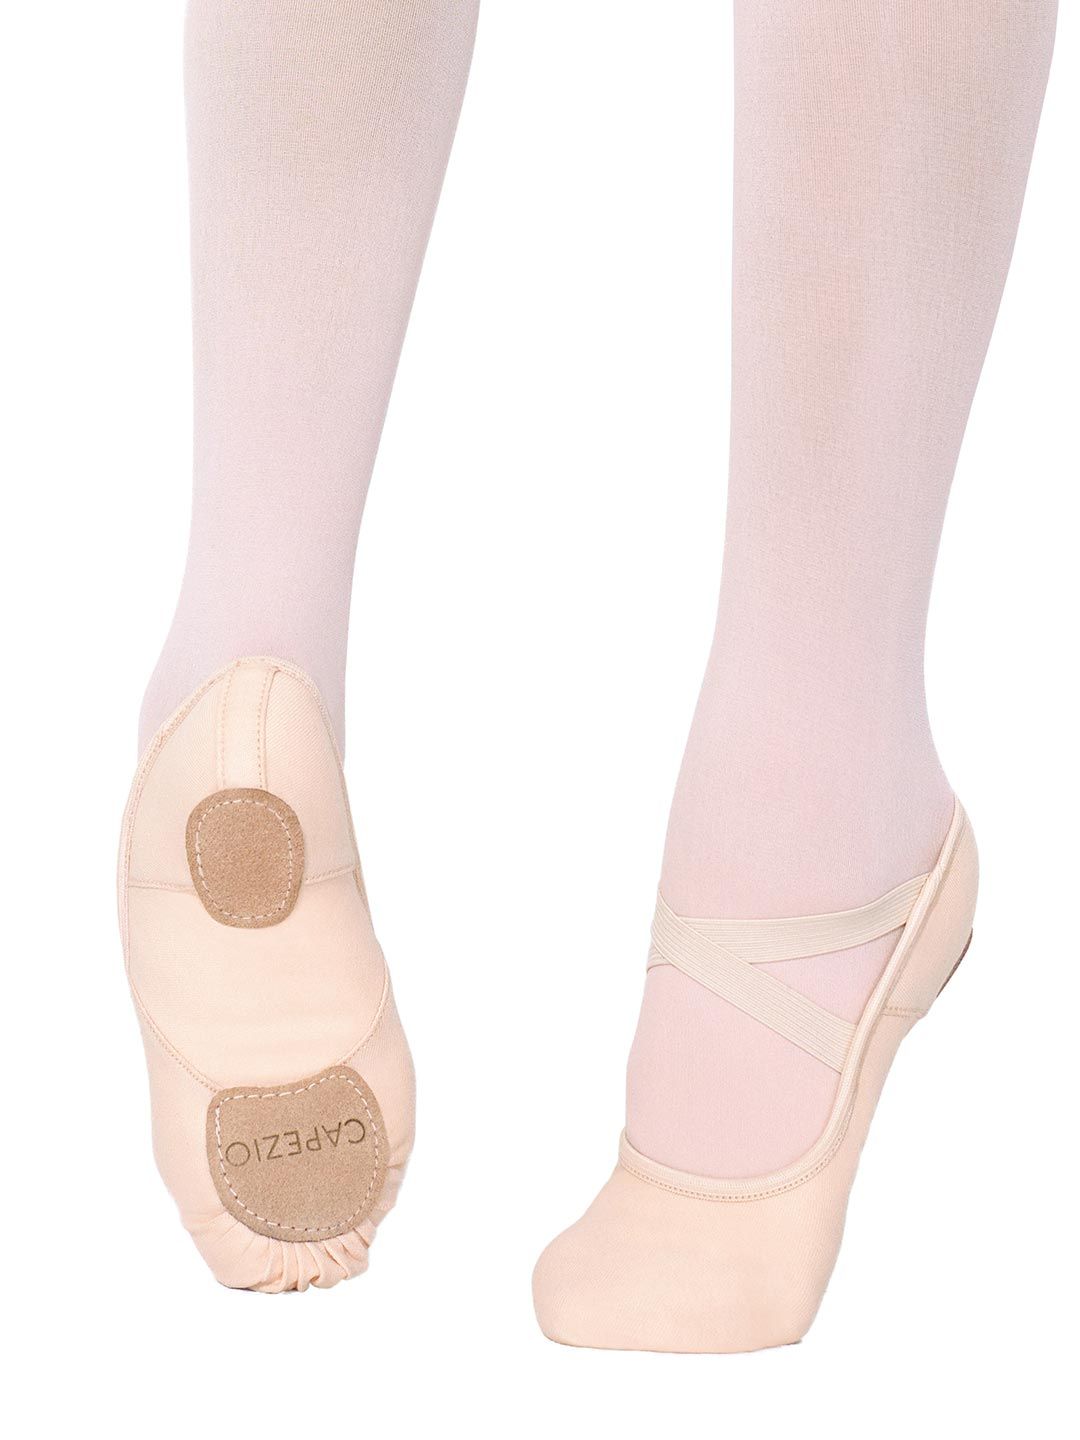 Hanami Split Sole Canvas Ballet Shoes